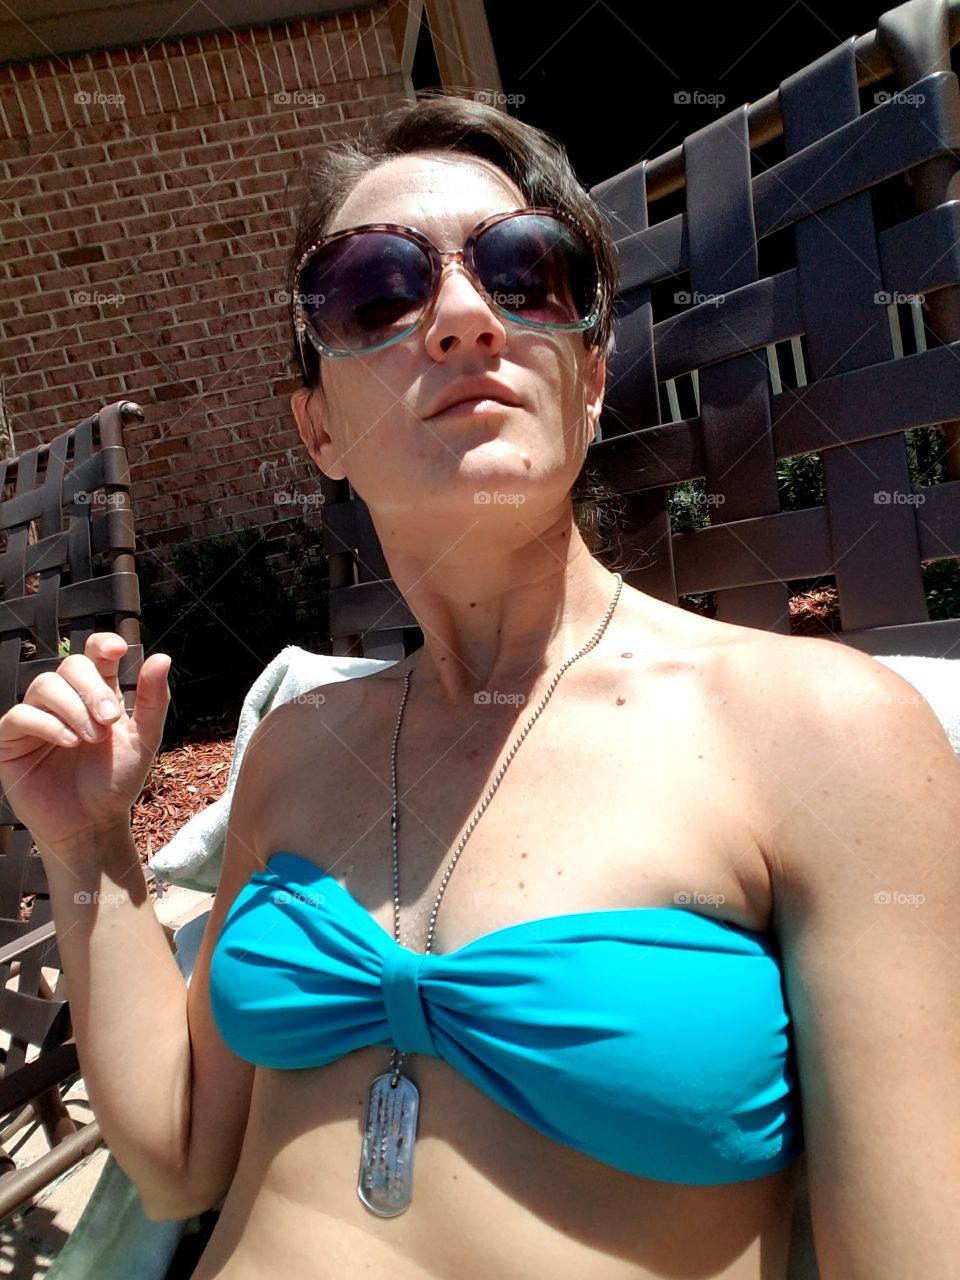 Young woman in bikini top sunglasses